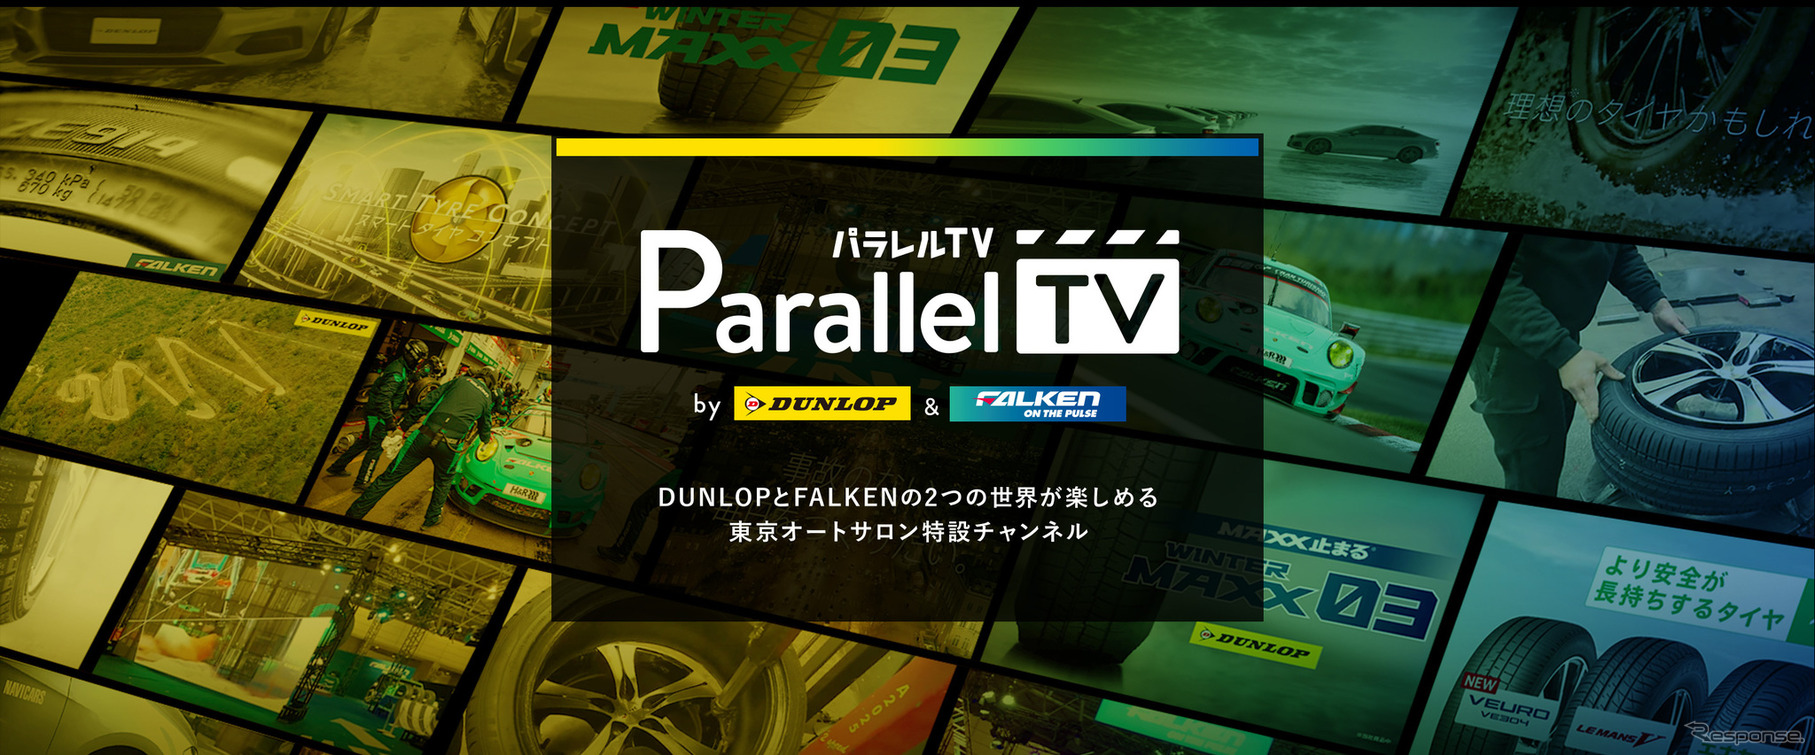 ダンロップ「Parallel TV」